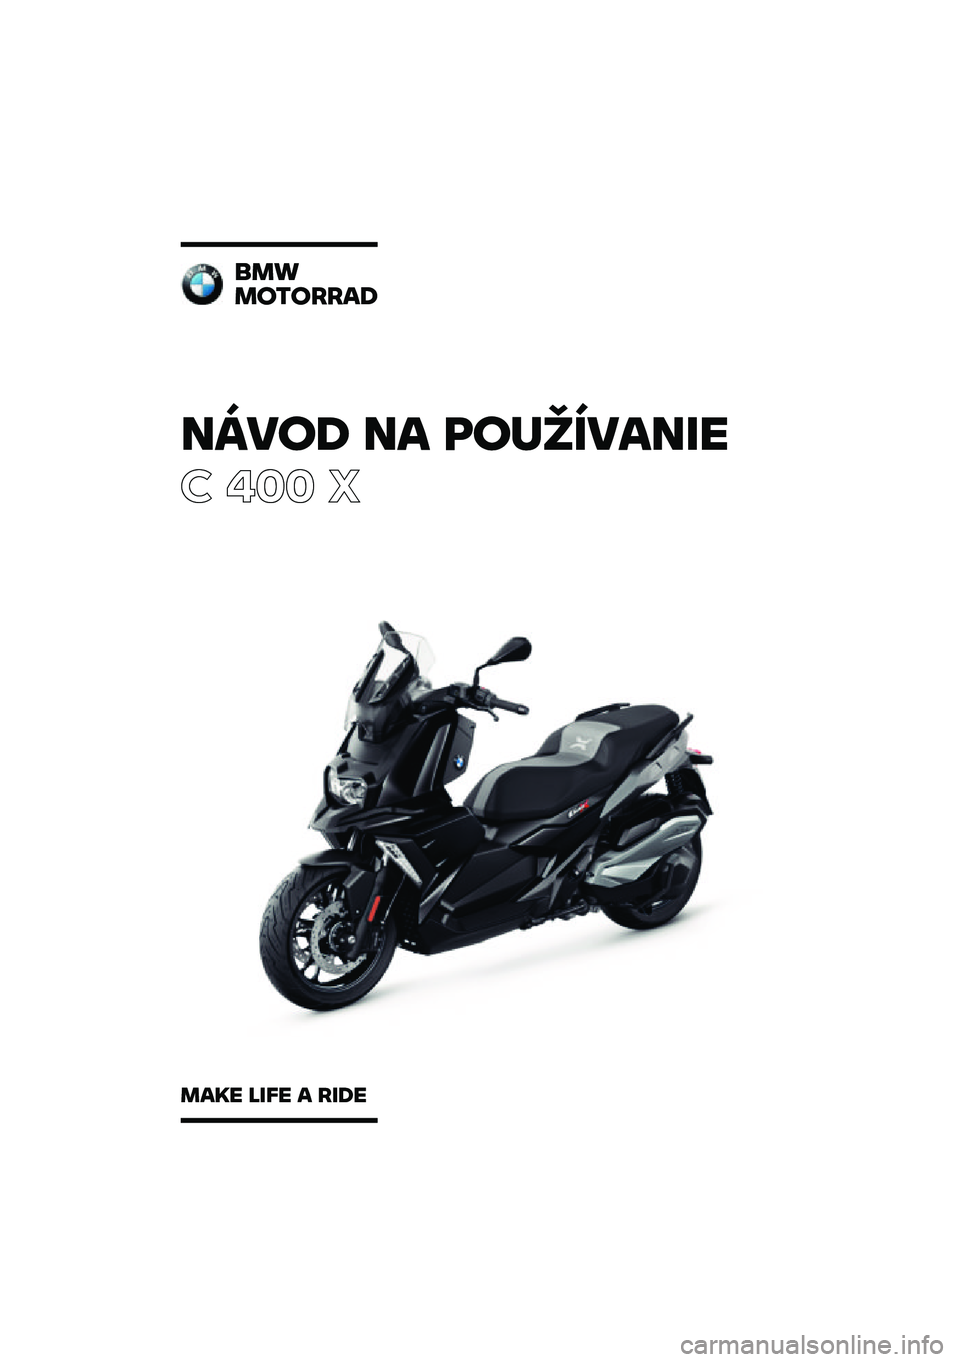 BMW MOTORRAD C 400 X 2020  Návod na používanie (in Slovak) �����\b �� �	��
�������
� ��� �
���
��������\b
���� ���� � ���\b� 